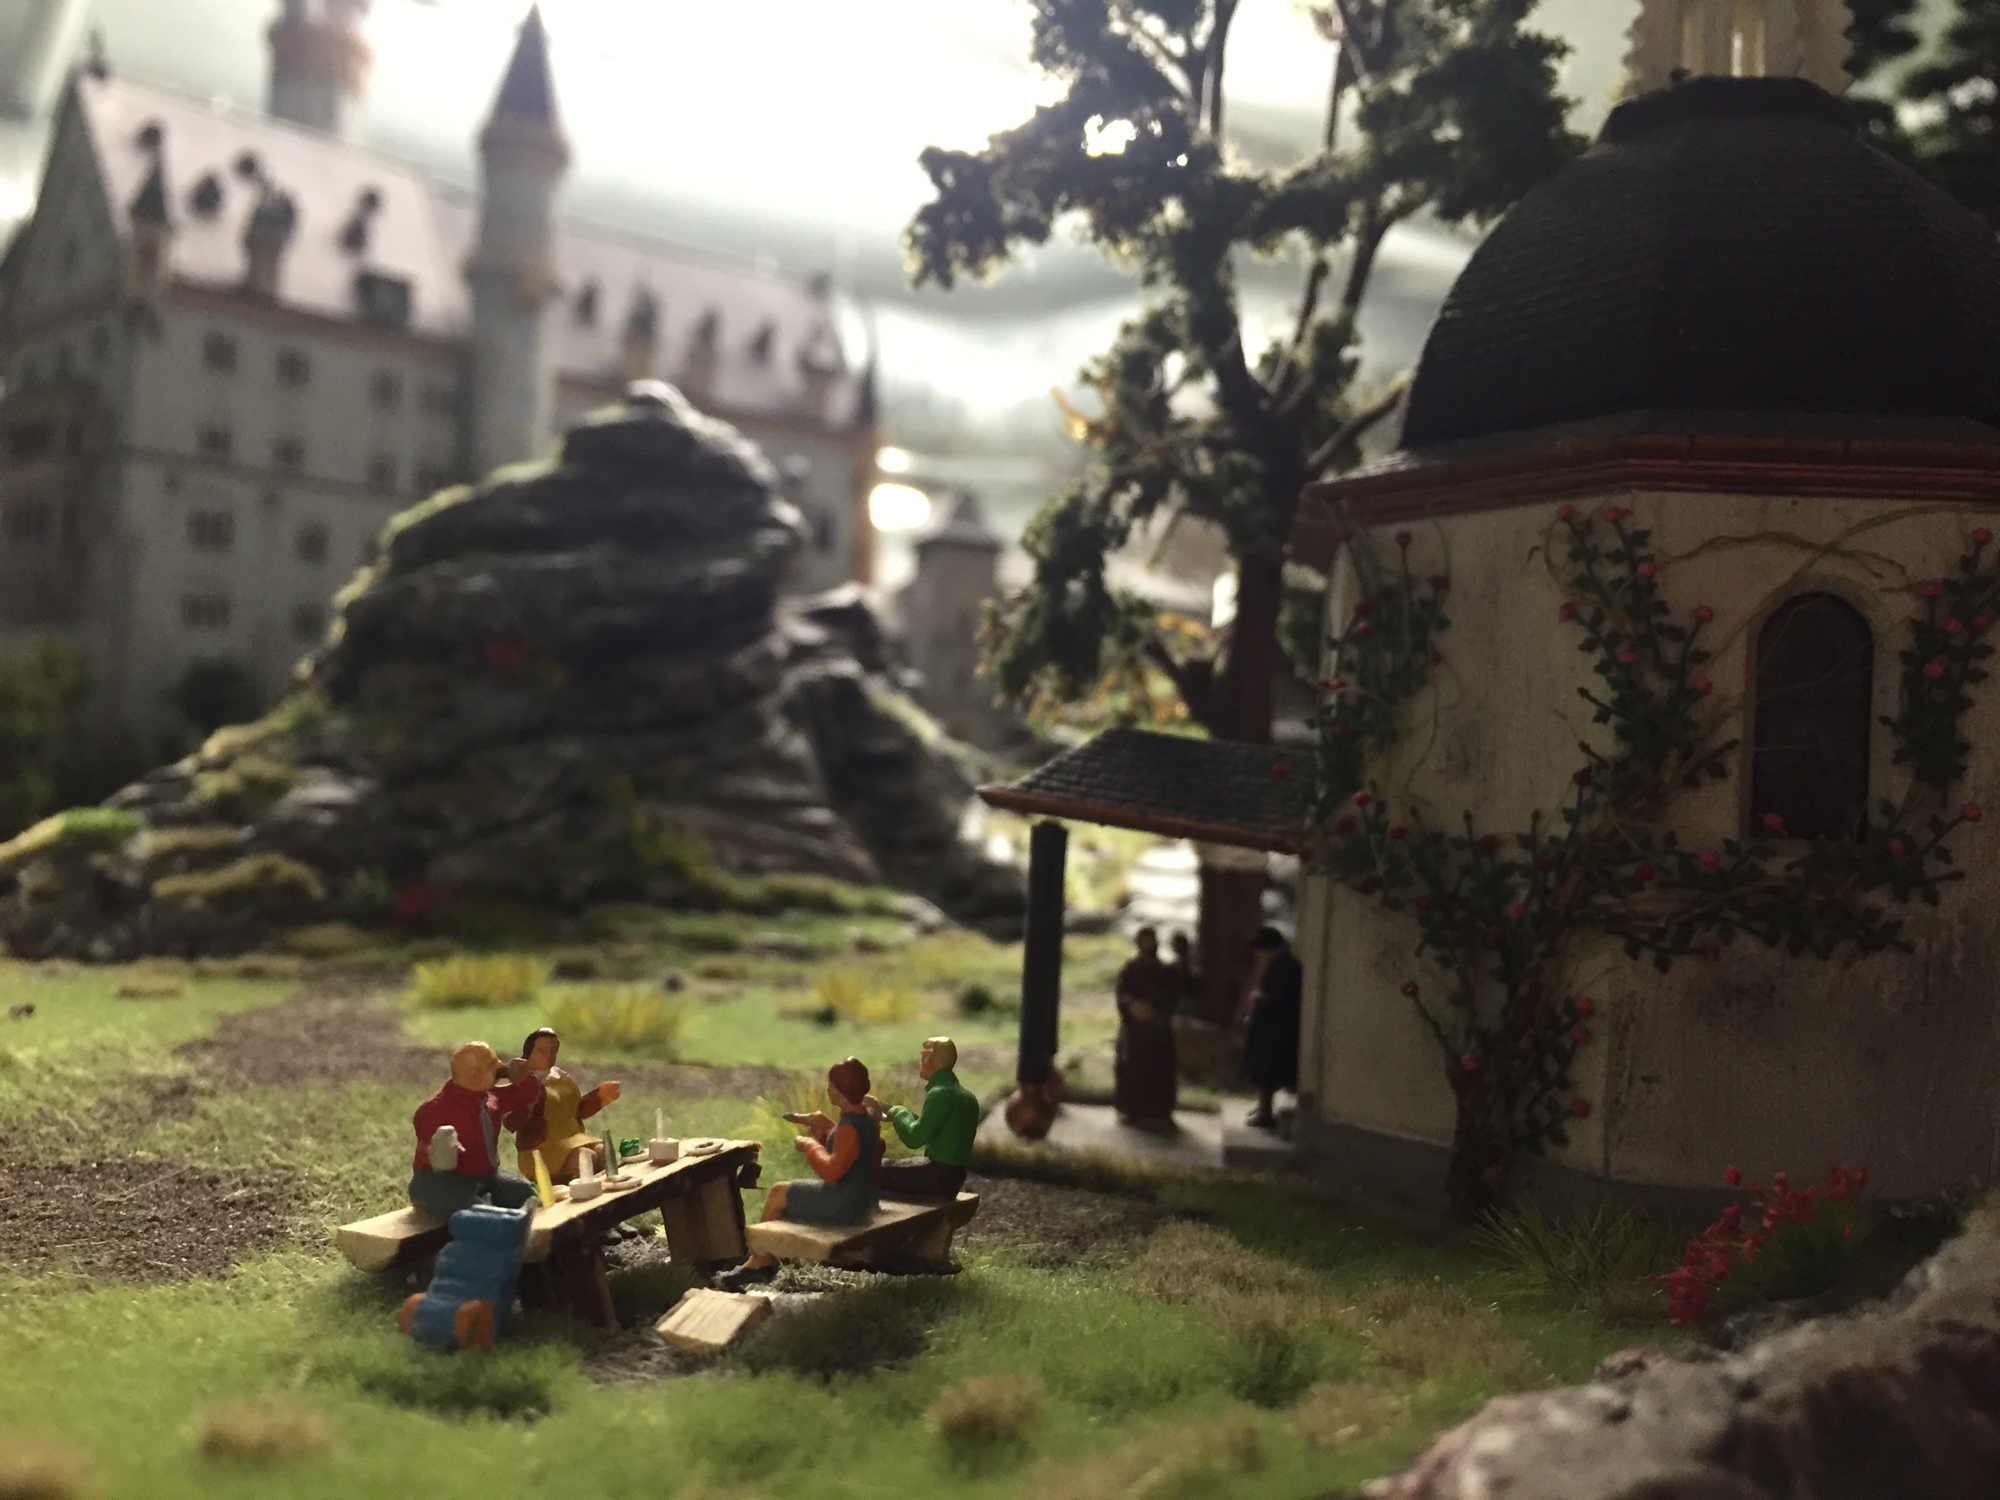 Almszene hinter Schloss Neuschwanstein im Miniaturwunderlang Hamburg, zu sehen nur im Rahmen der Backstageführung